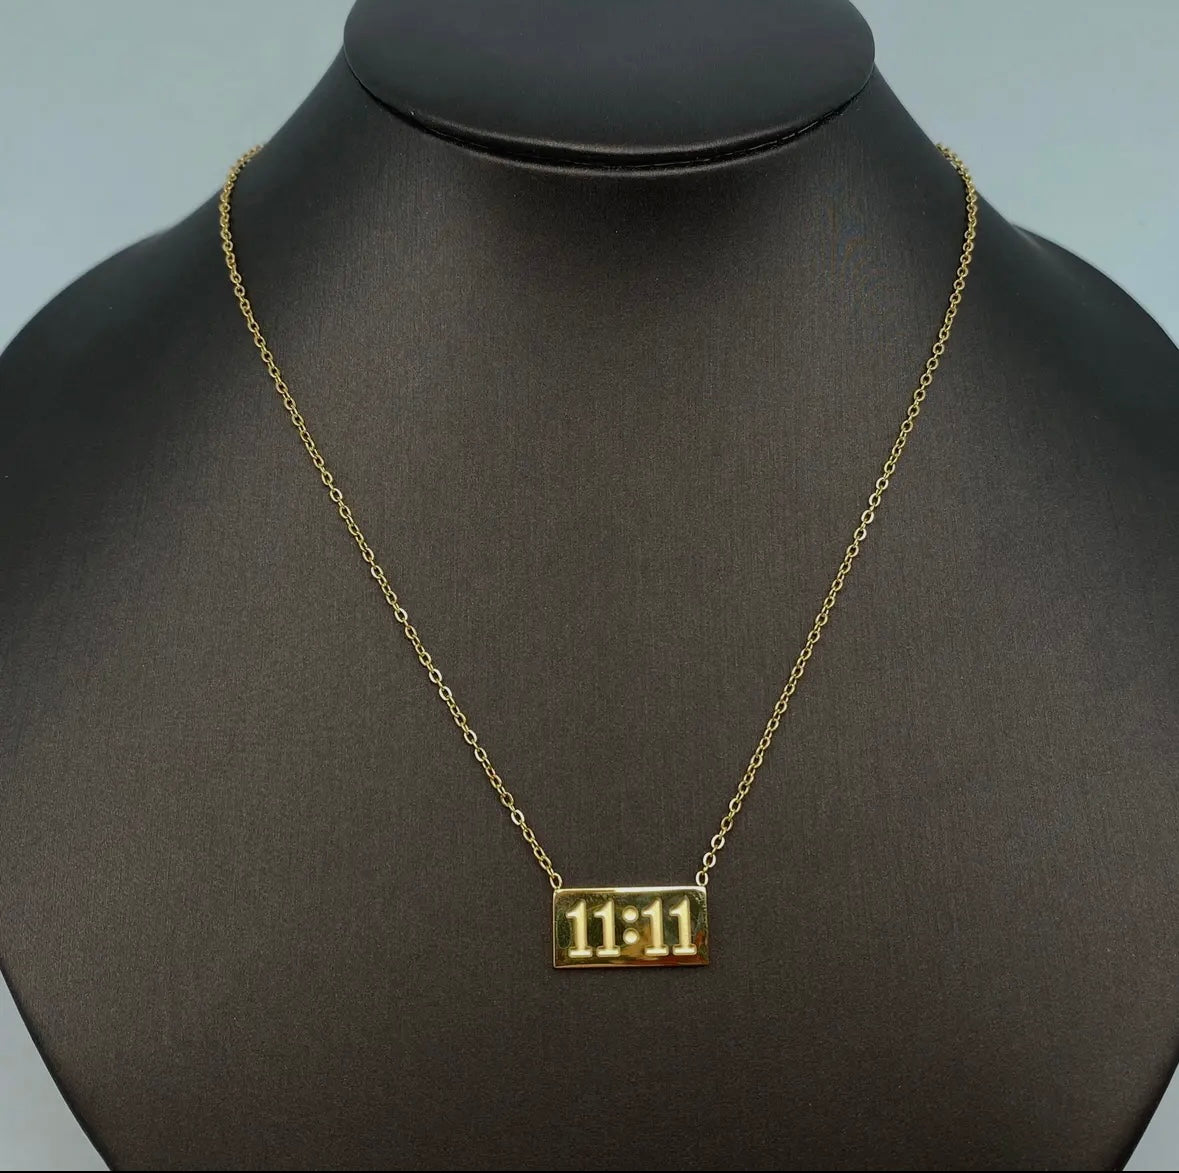 11:11 Pendant necklace